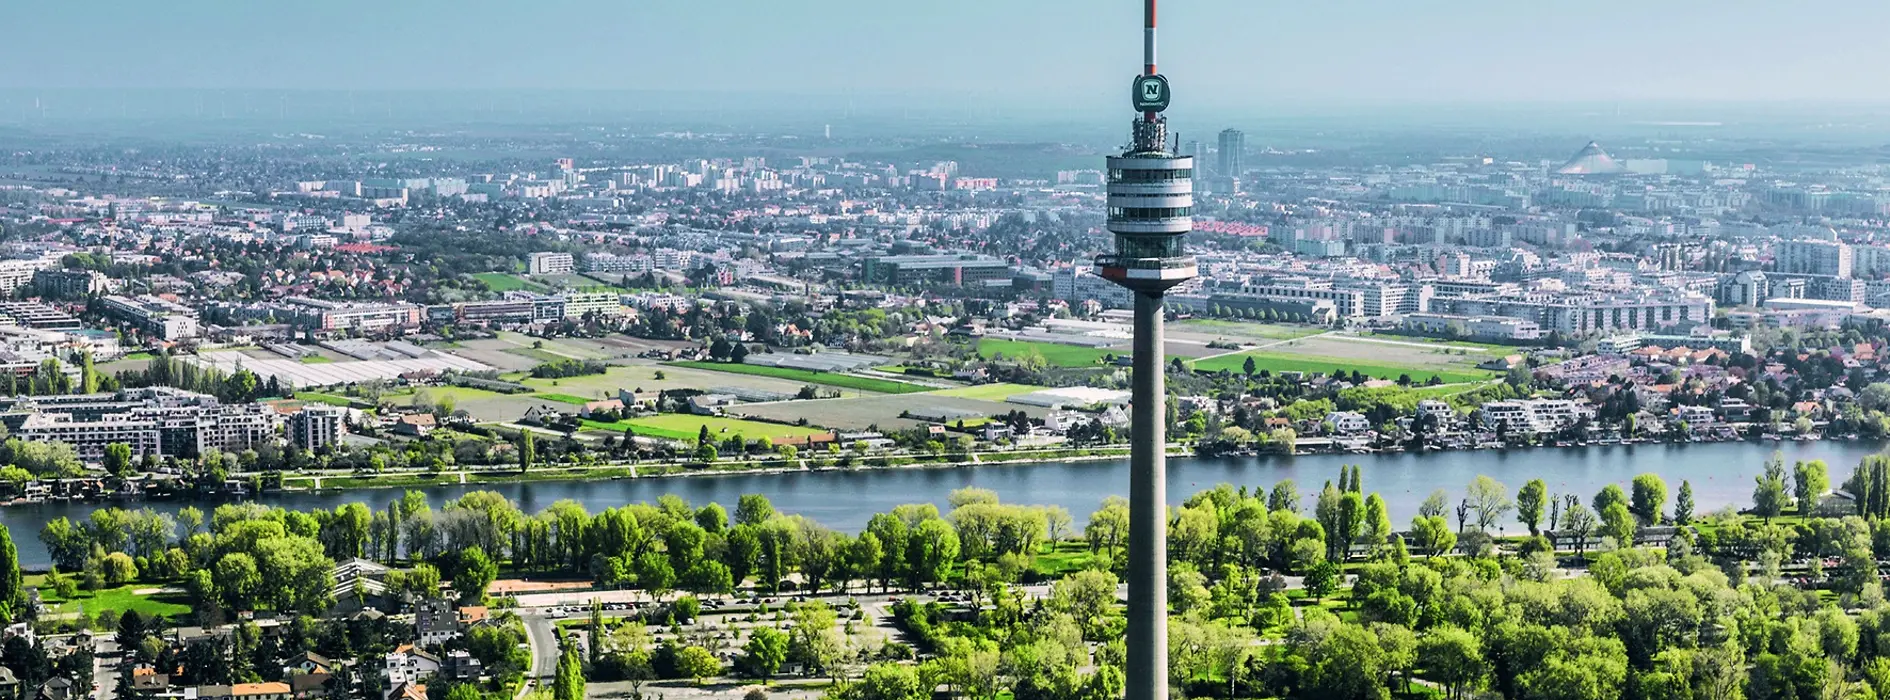 Снимок экстерьера Дунайской башни